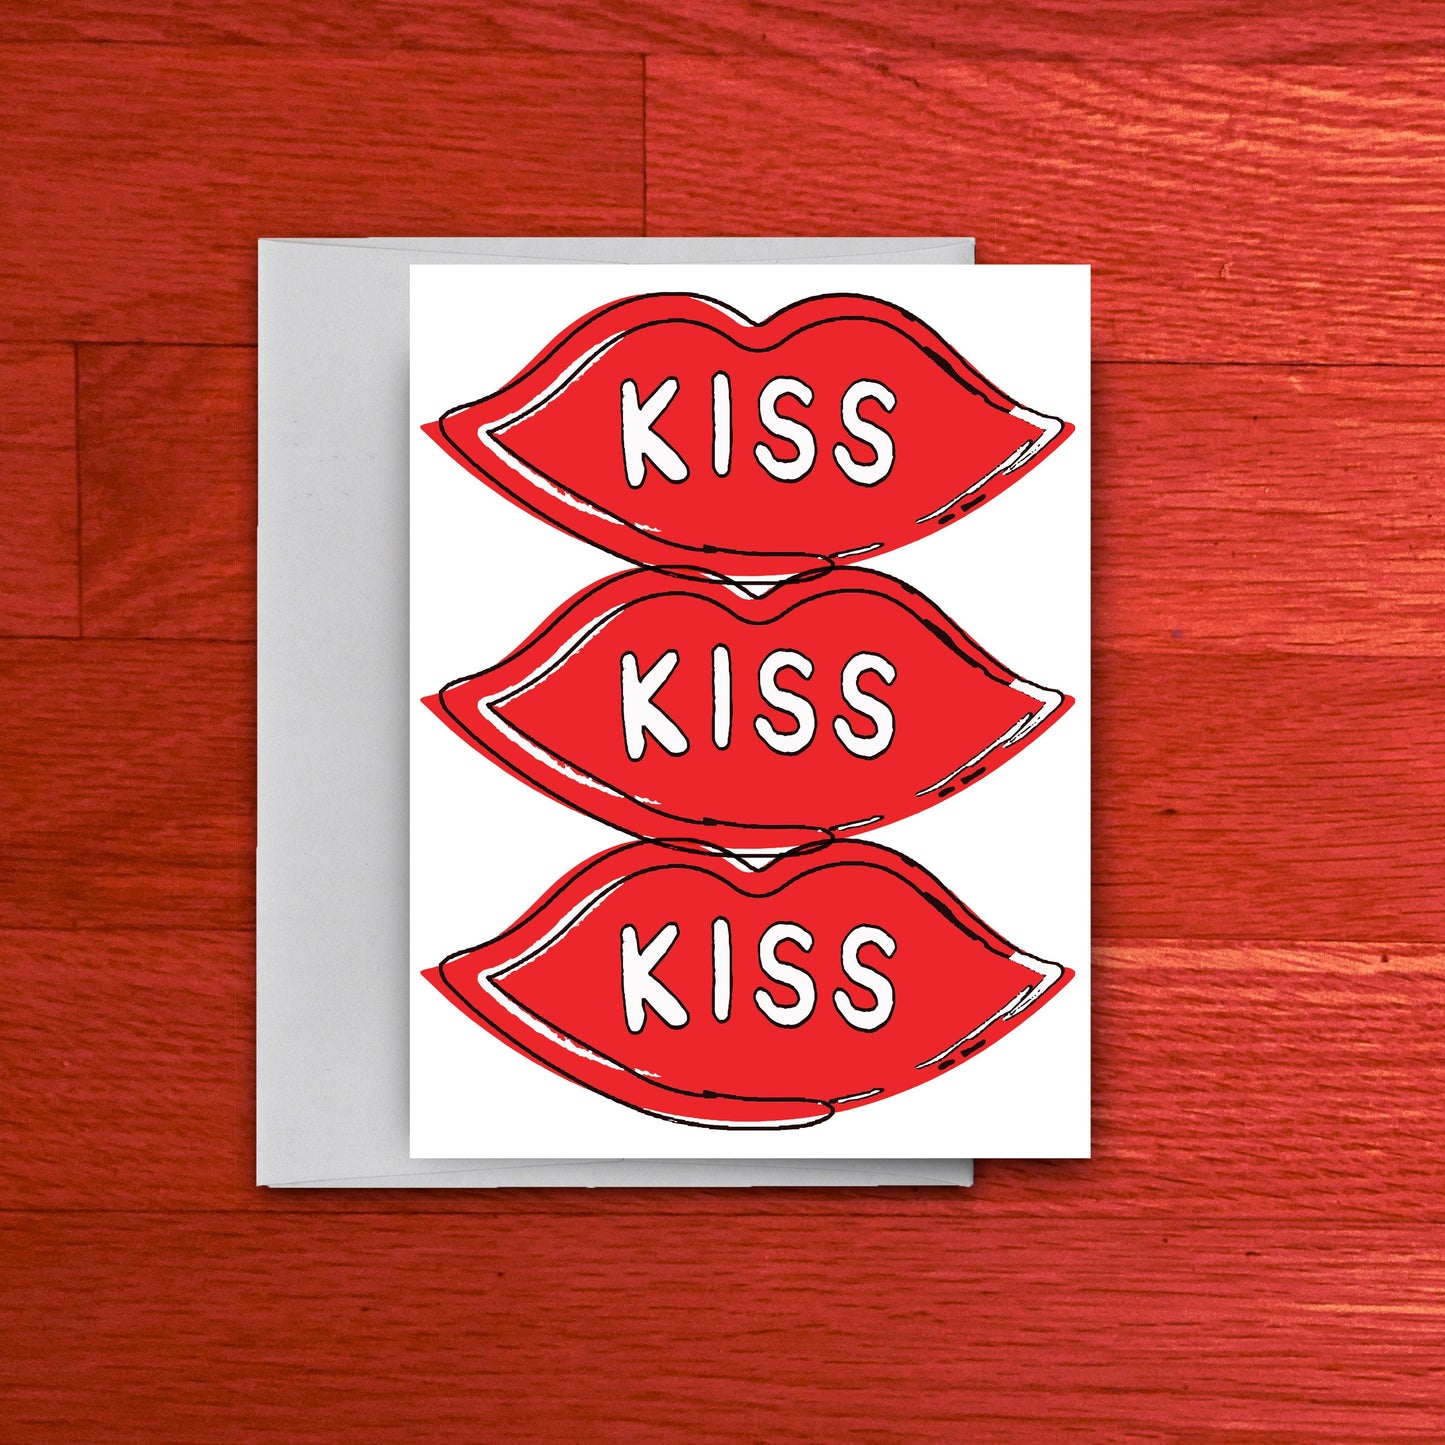 Kiss Kiss Kiss Card